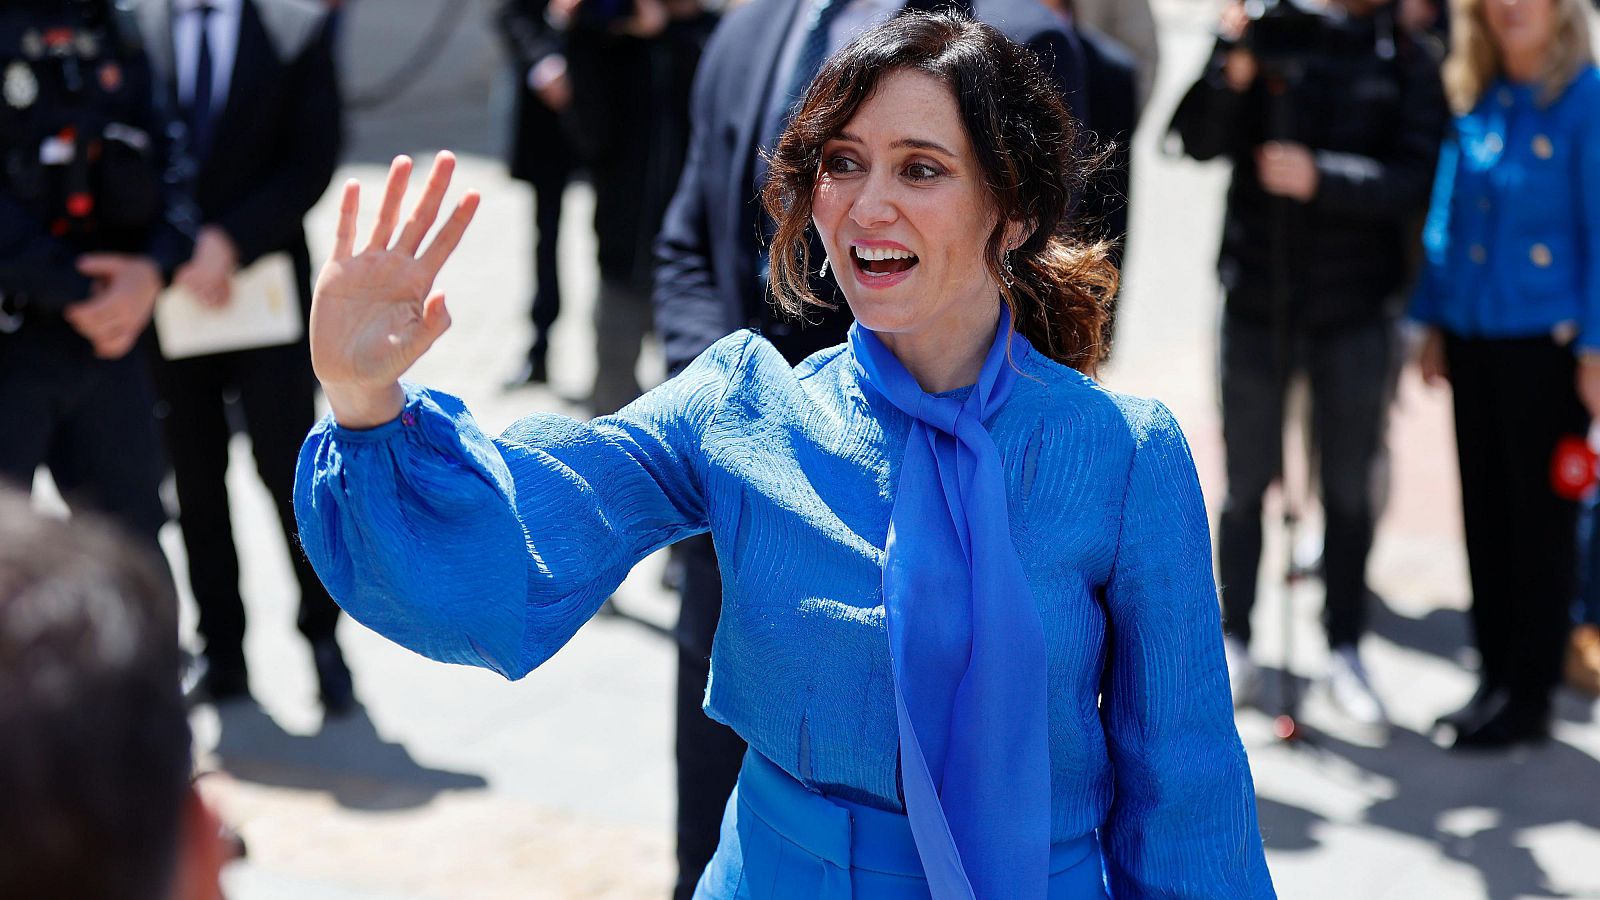 La presidenta de la Comunidad de Madrid, Isabel Díaz Ayuso, a la salida del premio Miguel de Cervantes.